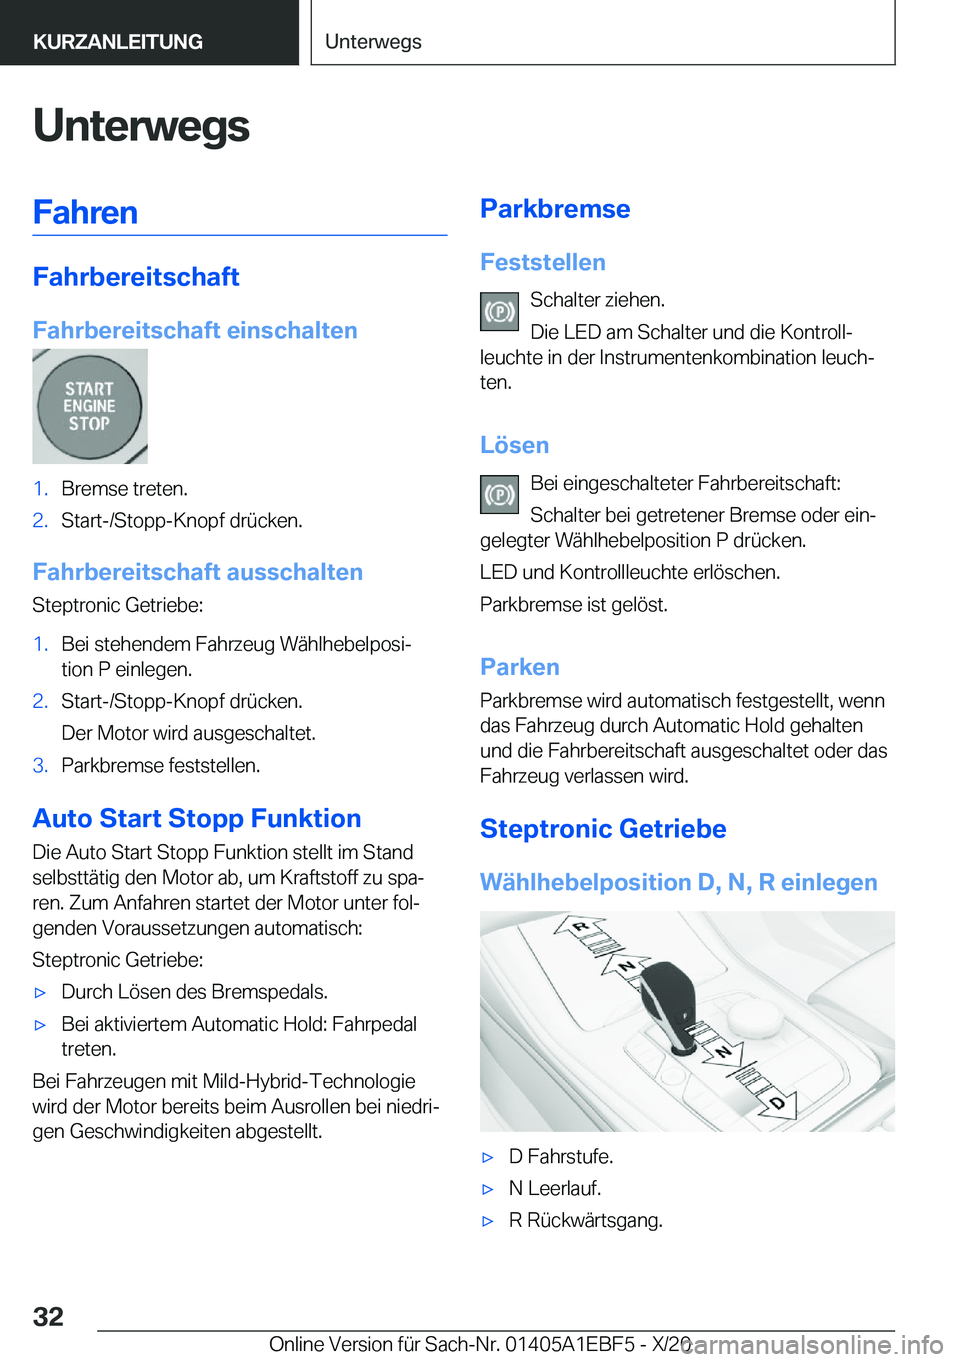 BMW 8 SERIES GRAN COUPE 2021  Betriebsanleitungen (in German) �U�n�t�e�r�w�e�g�s�F�a�h�r�e�n
�F�a�h�r�b�e�r�e�i�t�s�c�h�a�f�t
�F�a�h�r�b�e�r�e�i�t�s�c�h�a�f�t��e�i�n�s�c�h�a�l�t�e�n
�1�.�B�r�e�m�s�e��t�r�e�t�e�n�.�2�.�S�t�a�r�t�-�/�S�t�o�p�p�-�K�n�o�p�f��d�r�